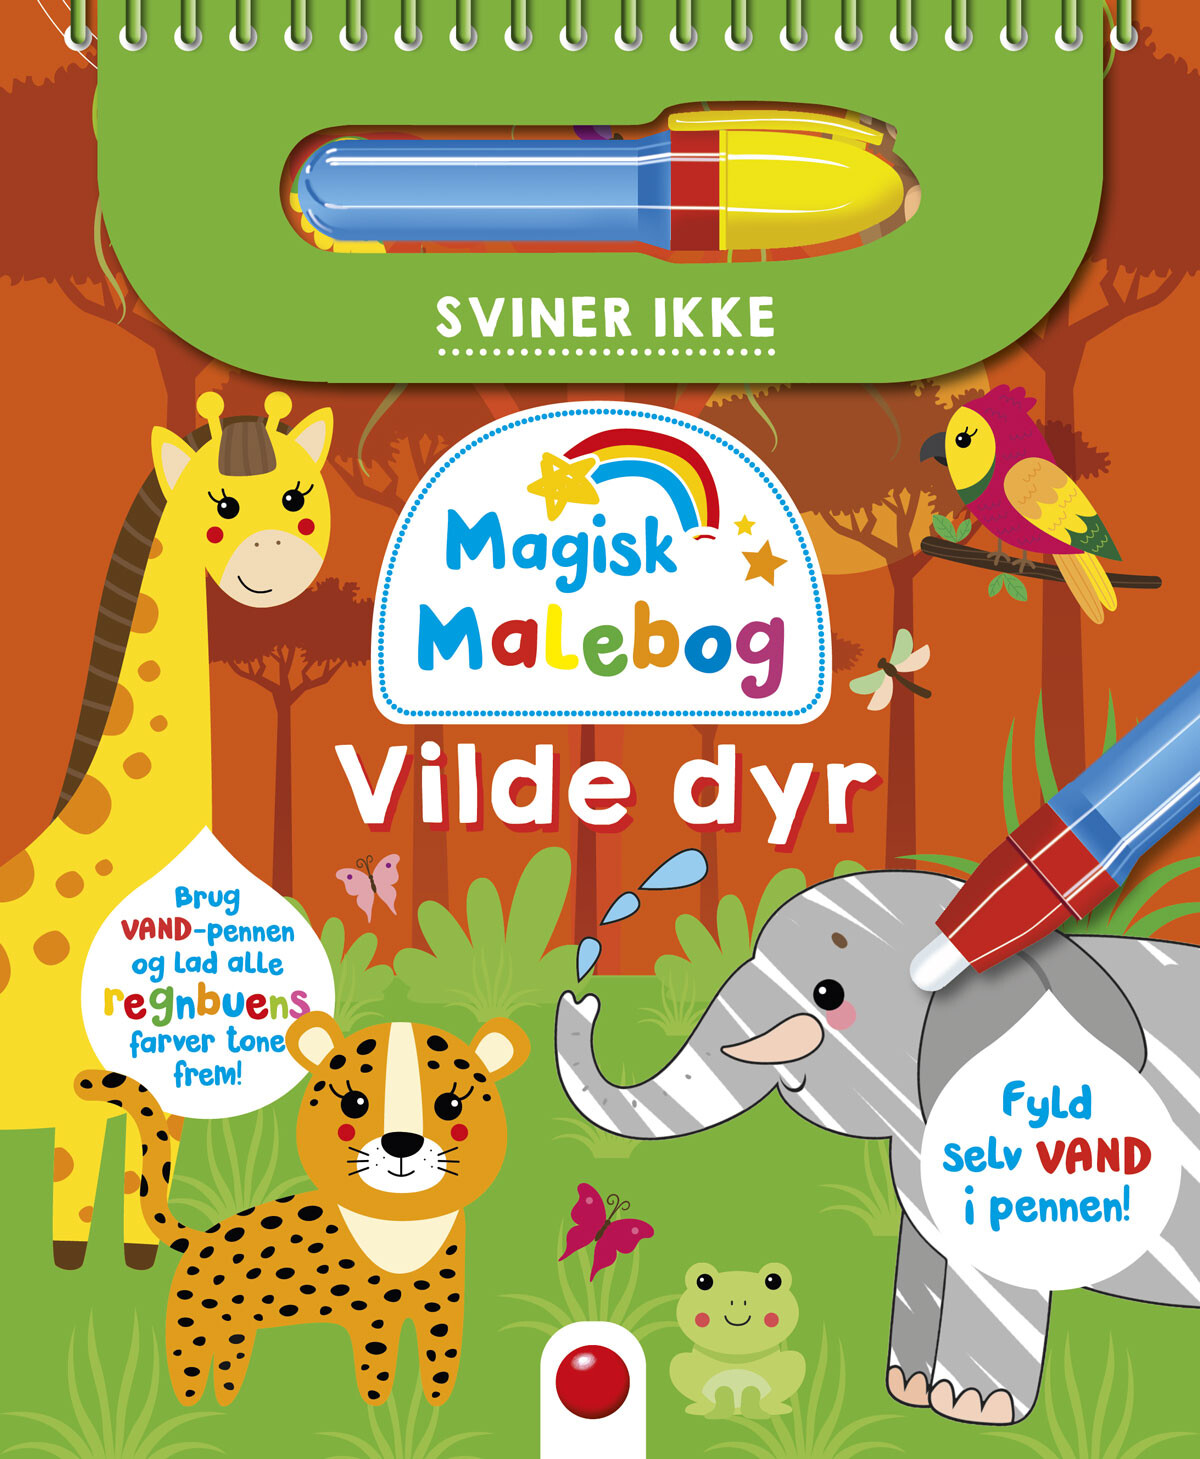 Se Magisk malebog: Vilde dyr hos Gucca.dk